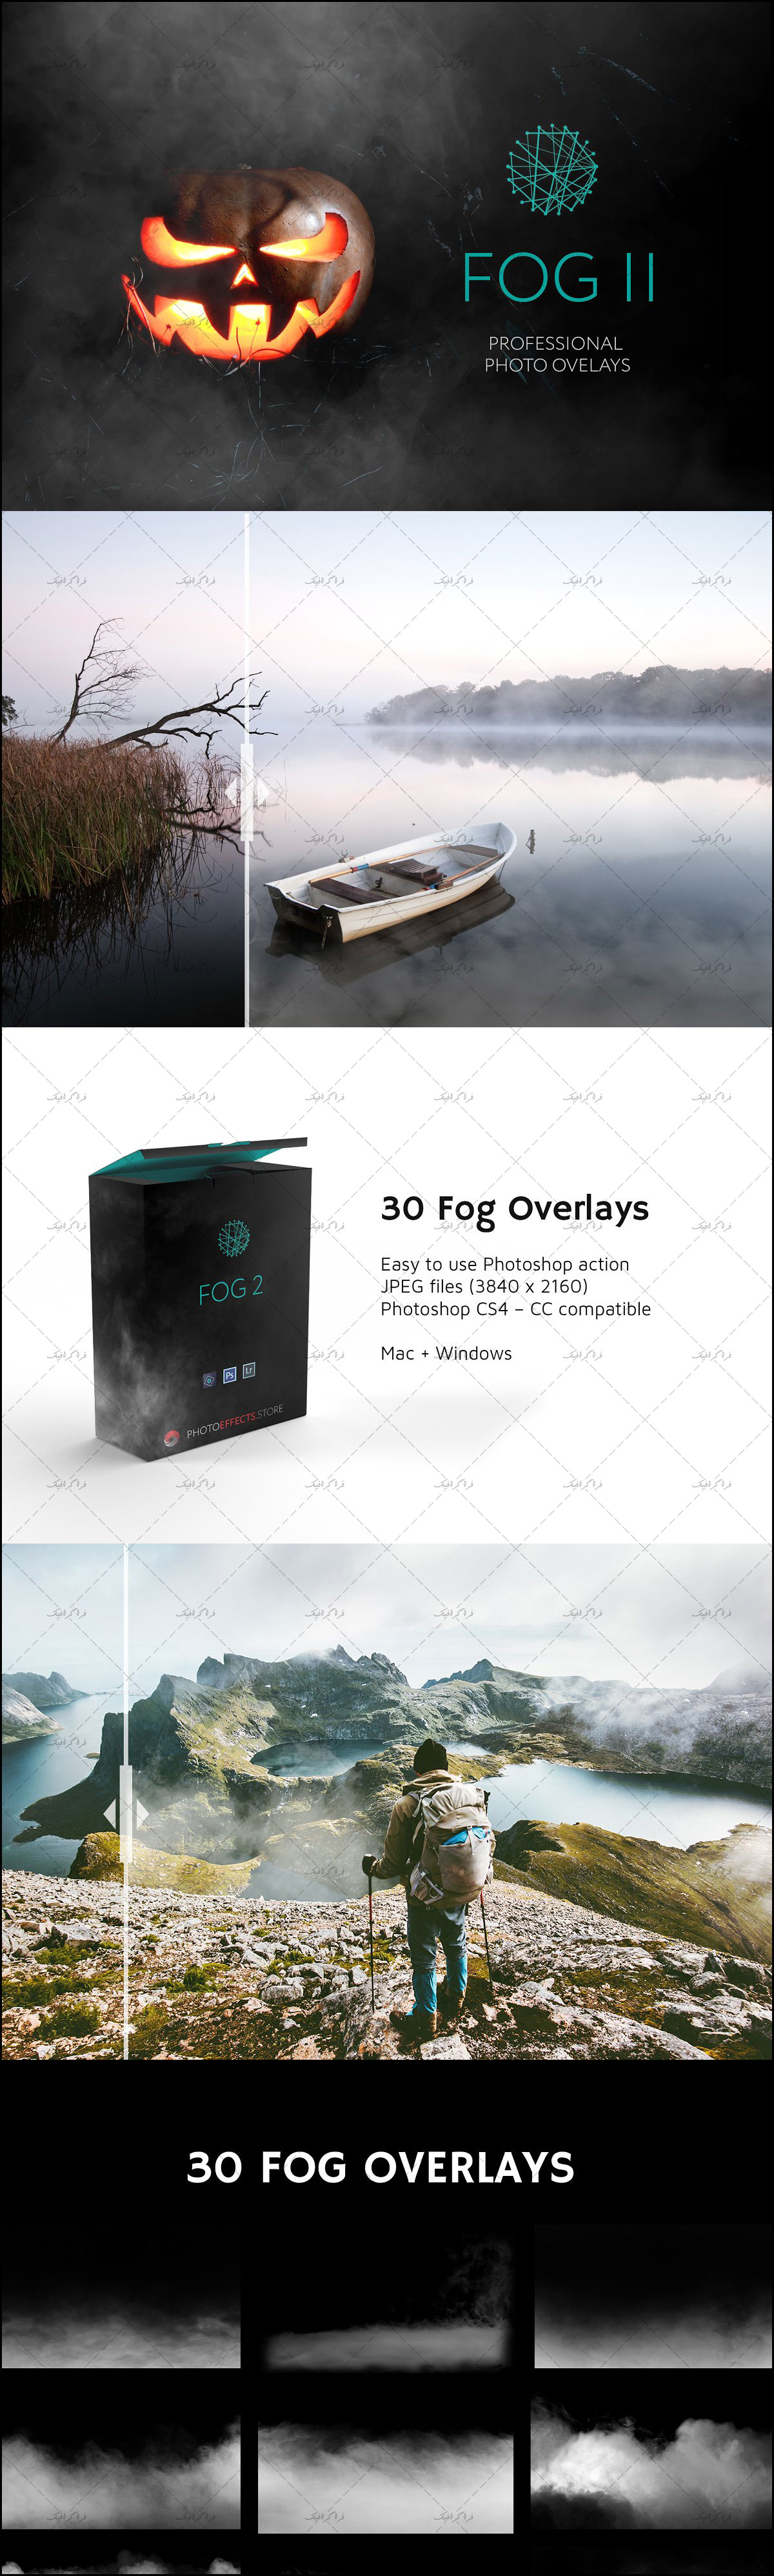 دانلود تصاویر افکت مه - کیفیت بالا